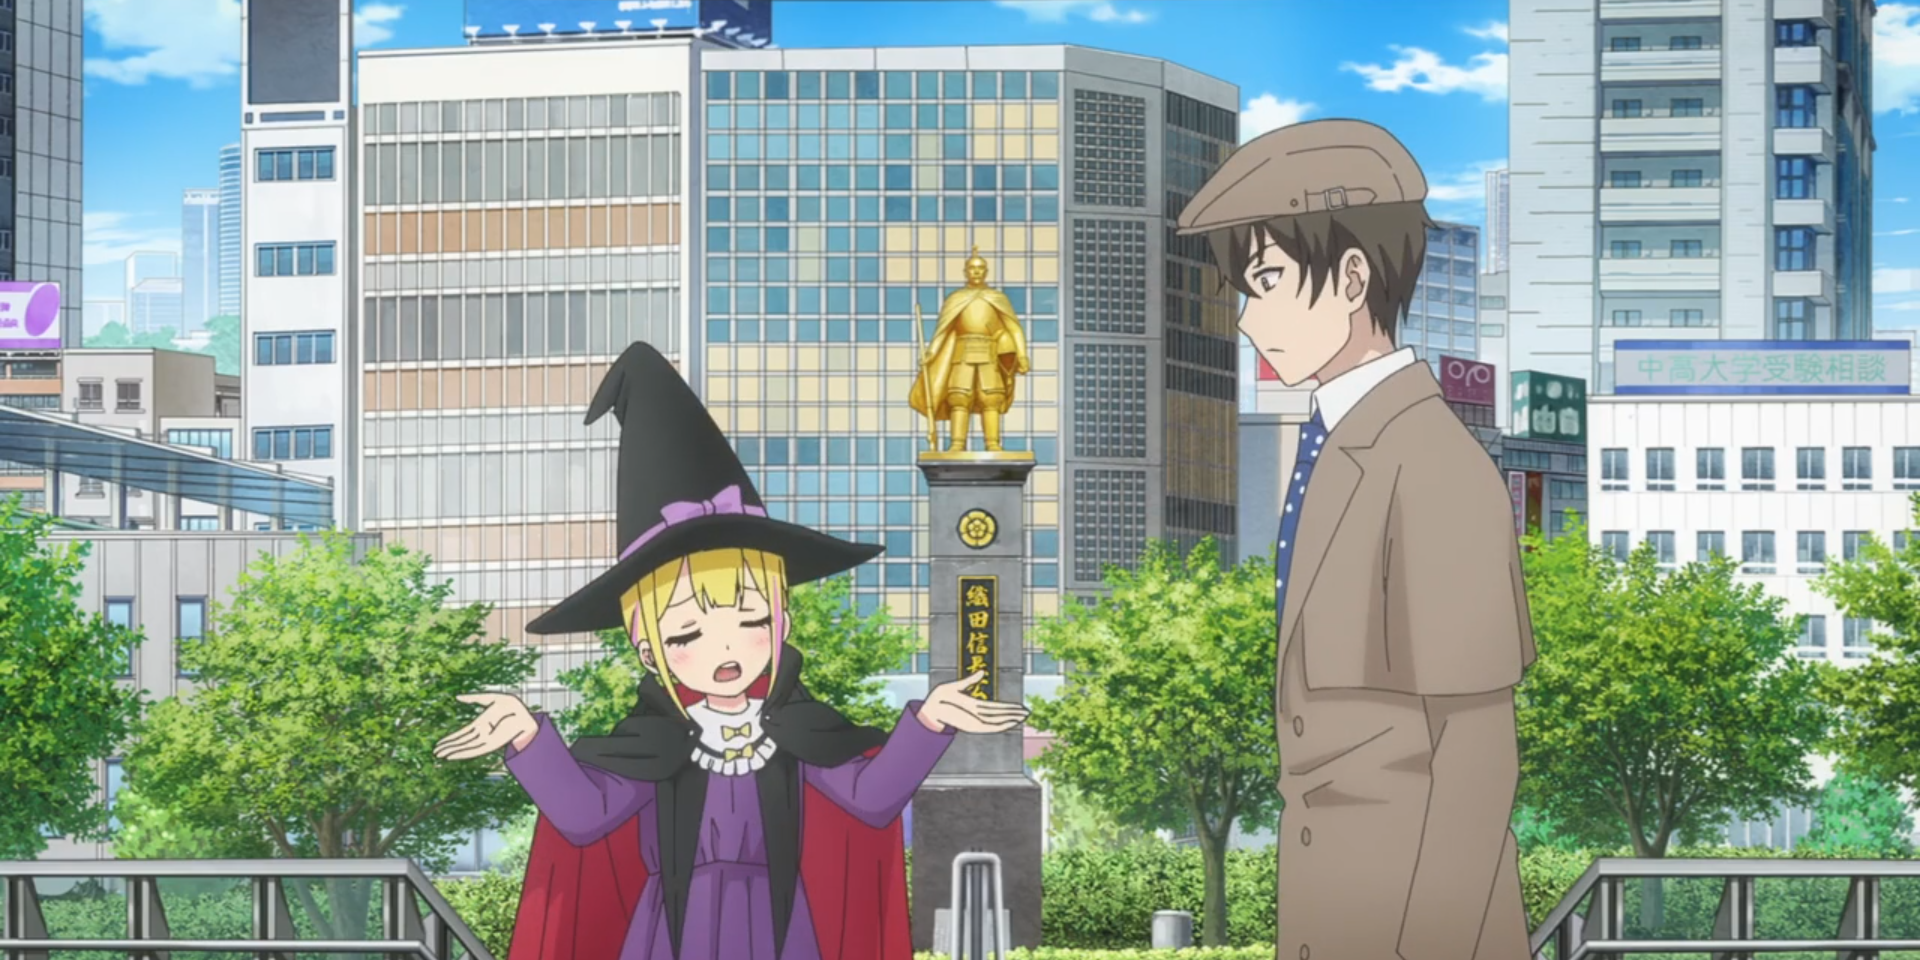 Sousuke e Sara fantasiados de Halloween - Sara como bruxa, Sousuke como detetive - conversam perto de uma estátua dourada, enquanto os braços de Sara estão estendidos em resignação.